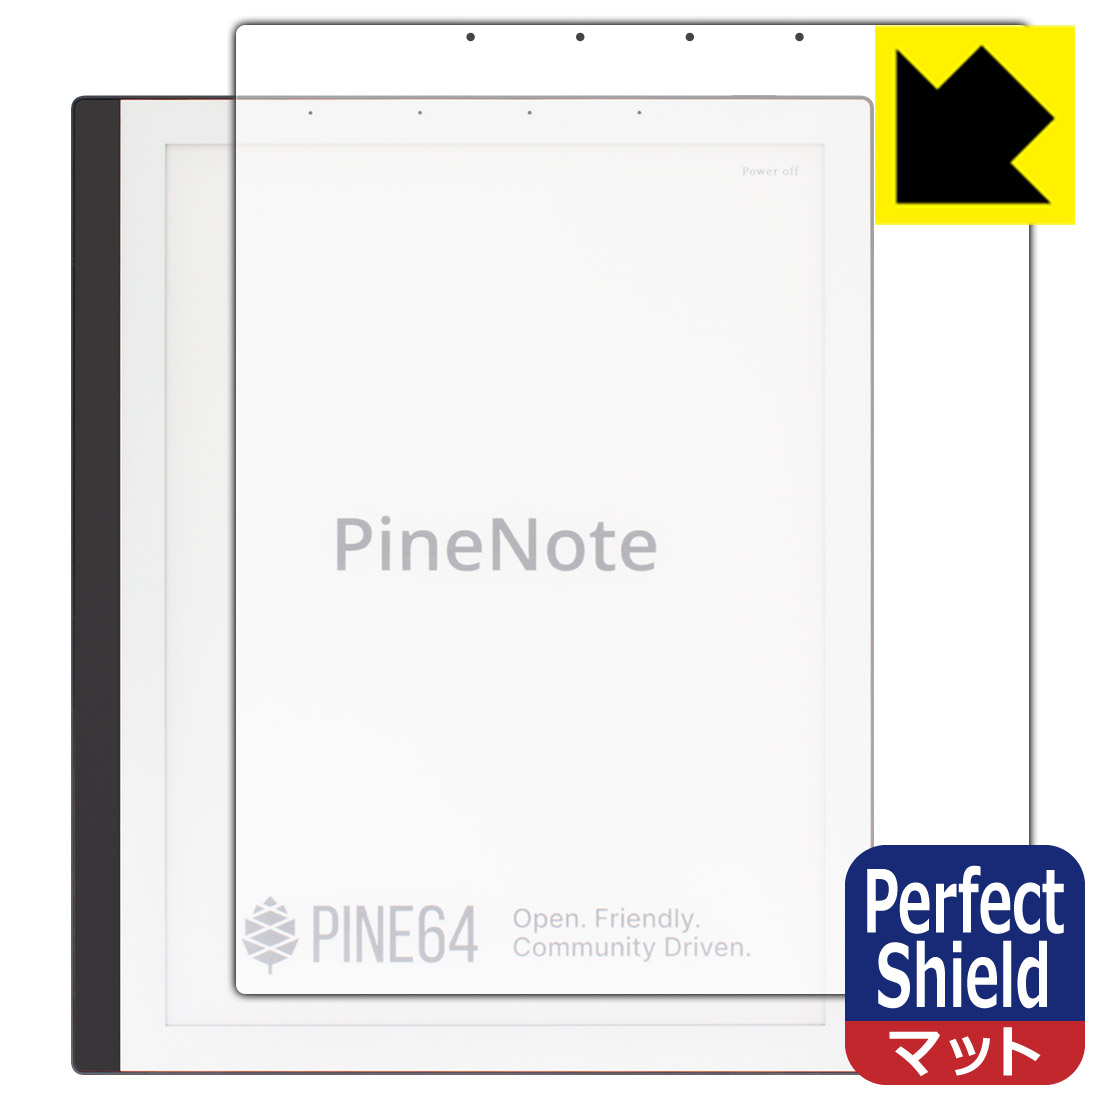 ●対応機種 : PINE64 PineNote Developer Edition●内容量 : 3枚●「Perfect Shield」は画面の反射を抑え、指のすべりもなめらかな指紋や皮脂汚れがつきにくい『アンチグレアタイプ(非光沢)の保護フィルム』●安心の国産素材を使用。日本国内の自社工場で製造し出荷しています。【ポスト投函送料無料】商品は【ポスト投函発送 (追跡可能メール便)】で発送します。お急ぎ、配達日時を指定されたい方は以下のクーポンを同時購入ください。【お急ぎ便クーポン】　プラス110円(税込)で速達扱いでの発送。お届けはポストへの投函となります。【配達日時指定クーポン】　プラス550円(税込)で配達日時を指定し、宅配便で発送させていただきます。【お急ぎ便クーポン】はこちらをクリック【配達日時指定クーポン】はこちらをクリック 　 表面に微細な凹凸を作ることにより、外光を乱反射させギラツキを抑える「アンチグレア加工」がされております。 屋外での太陽光の映り込み、屋内でも蛍光灯などの映り込みが気になるシーンが多い方におすすめです。 また、指紋がついた場合でも目立ちにくいという特長があります。 指滑りはさらさらな使用感でストレスのない操作・入力が可能です。 ハードコート加工がされており、キズや擦れに強くなっています。簡単にキズがつかず長くご利用いただけます。 反射防止のアンチグレア加工で指紋が目立ちにくい上、表面は防汚コーティングがされており、皮脂や汚れがつきにくく、また、落ちやすくなっています。 接着面は気泡の入りにくい特殊な自己吸着タイプです。素材に柔軟性があり、貼り付け作業も簡単にできます。また、はがすときにガラス製フィルムのように割れてしまうことはありません。 貼り直しが何度でもできるので、正しい位置へ貼り付けられるまでやり直すことができます。 最高級グレードの国産素材を日本国内の弊社工場で加工している完全な Made in Japan です。安心の品質をお届けします。 使用上の注意 ●本製品は機器の画面をキズなどから保護するフィルムです。他の目的にはご使用にならないでください。 ●本製品は液晶保護および機器本体を完全に保護することを保証するものではありません。機器の破損、損傷、故障、その他損害につきましては一切の責任を負いかねます。 ●製品の性質上、画面操作の反応が変化したり、表示等が変化して見える場合がございます。 ●貼り付け作業時の失敗(位置ズレ、汚れ、ゆがみ、折れ、気泡など)および取り外し作業時の破損、損傷などについては、一切の責任を負いかねます。 ●水に濡れた状態でのご使用は吸着力の低下などにより、保護フィルムがはがれてしまう場合がございます。防水対応の機器でご使用の場合はご注意ください。 ●アルコール類やその他薬剤を本製品に付着させないでください。表面のコーティングや吸着面が変質するおそれがあります。 ●品質向上のため、仕様などを予告なく変更する場合がございますので、予めご了承ください。